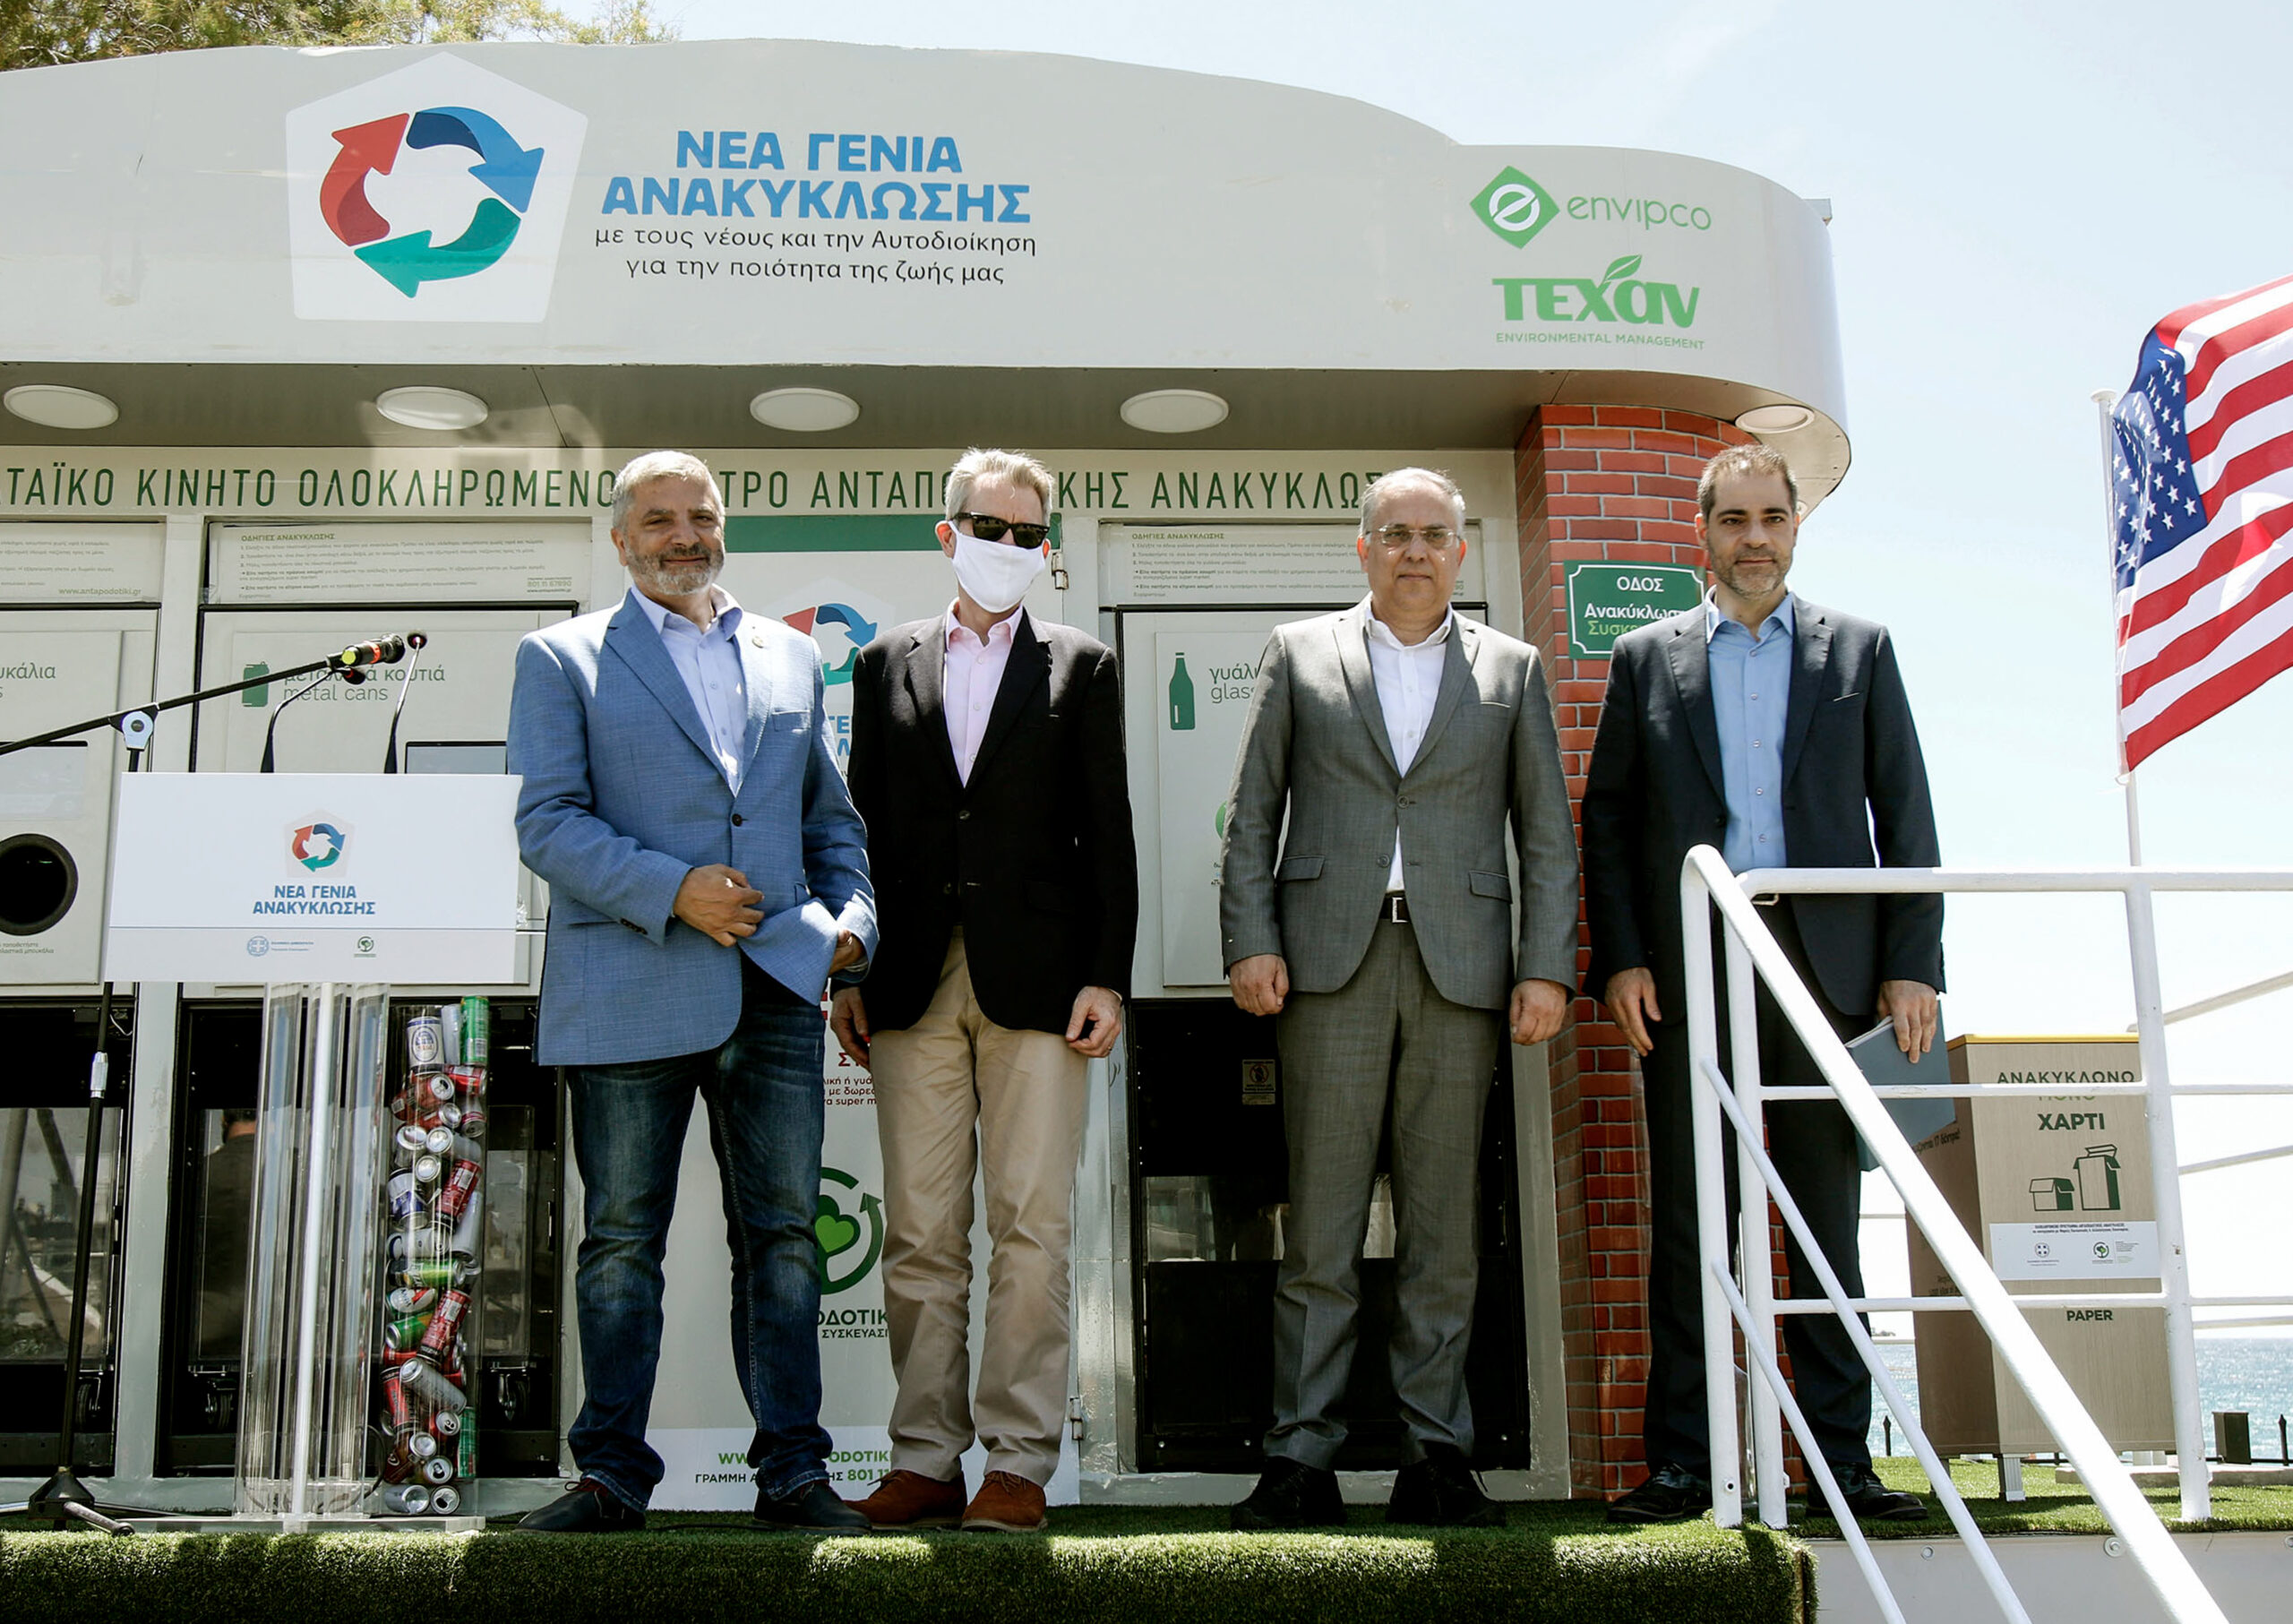 Άλιμος: Εγκαινιάστηκε το πρώτο ενεργειακά αυτόνομο σπίτι ανακύκλωσης παγκοσμίως